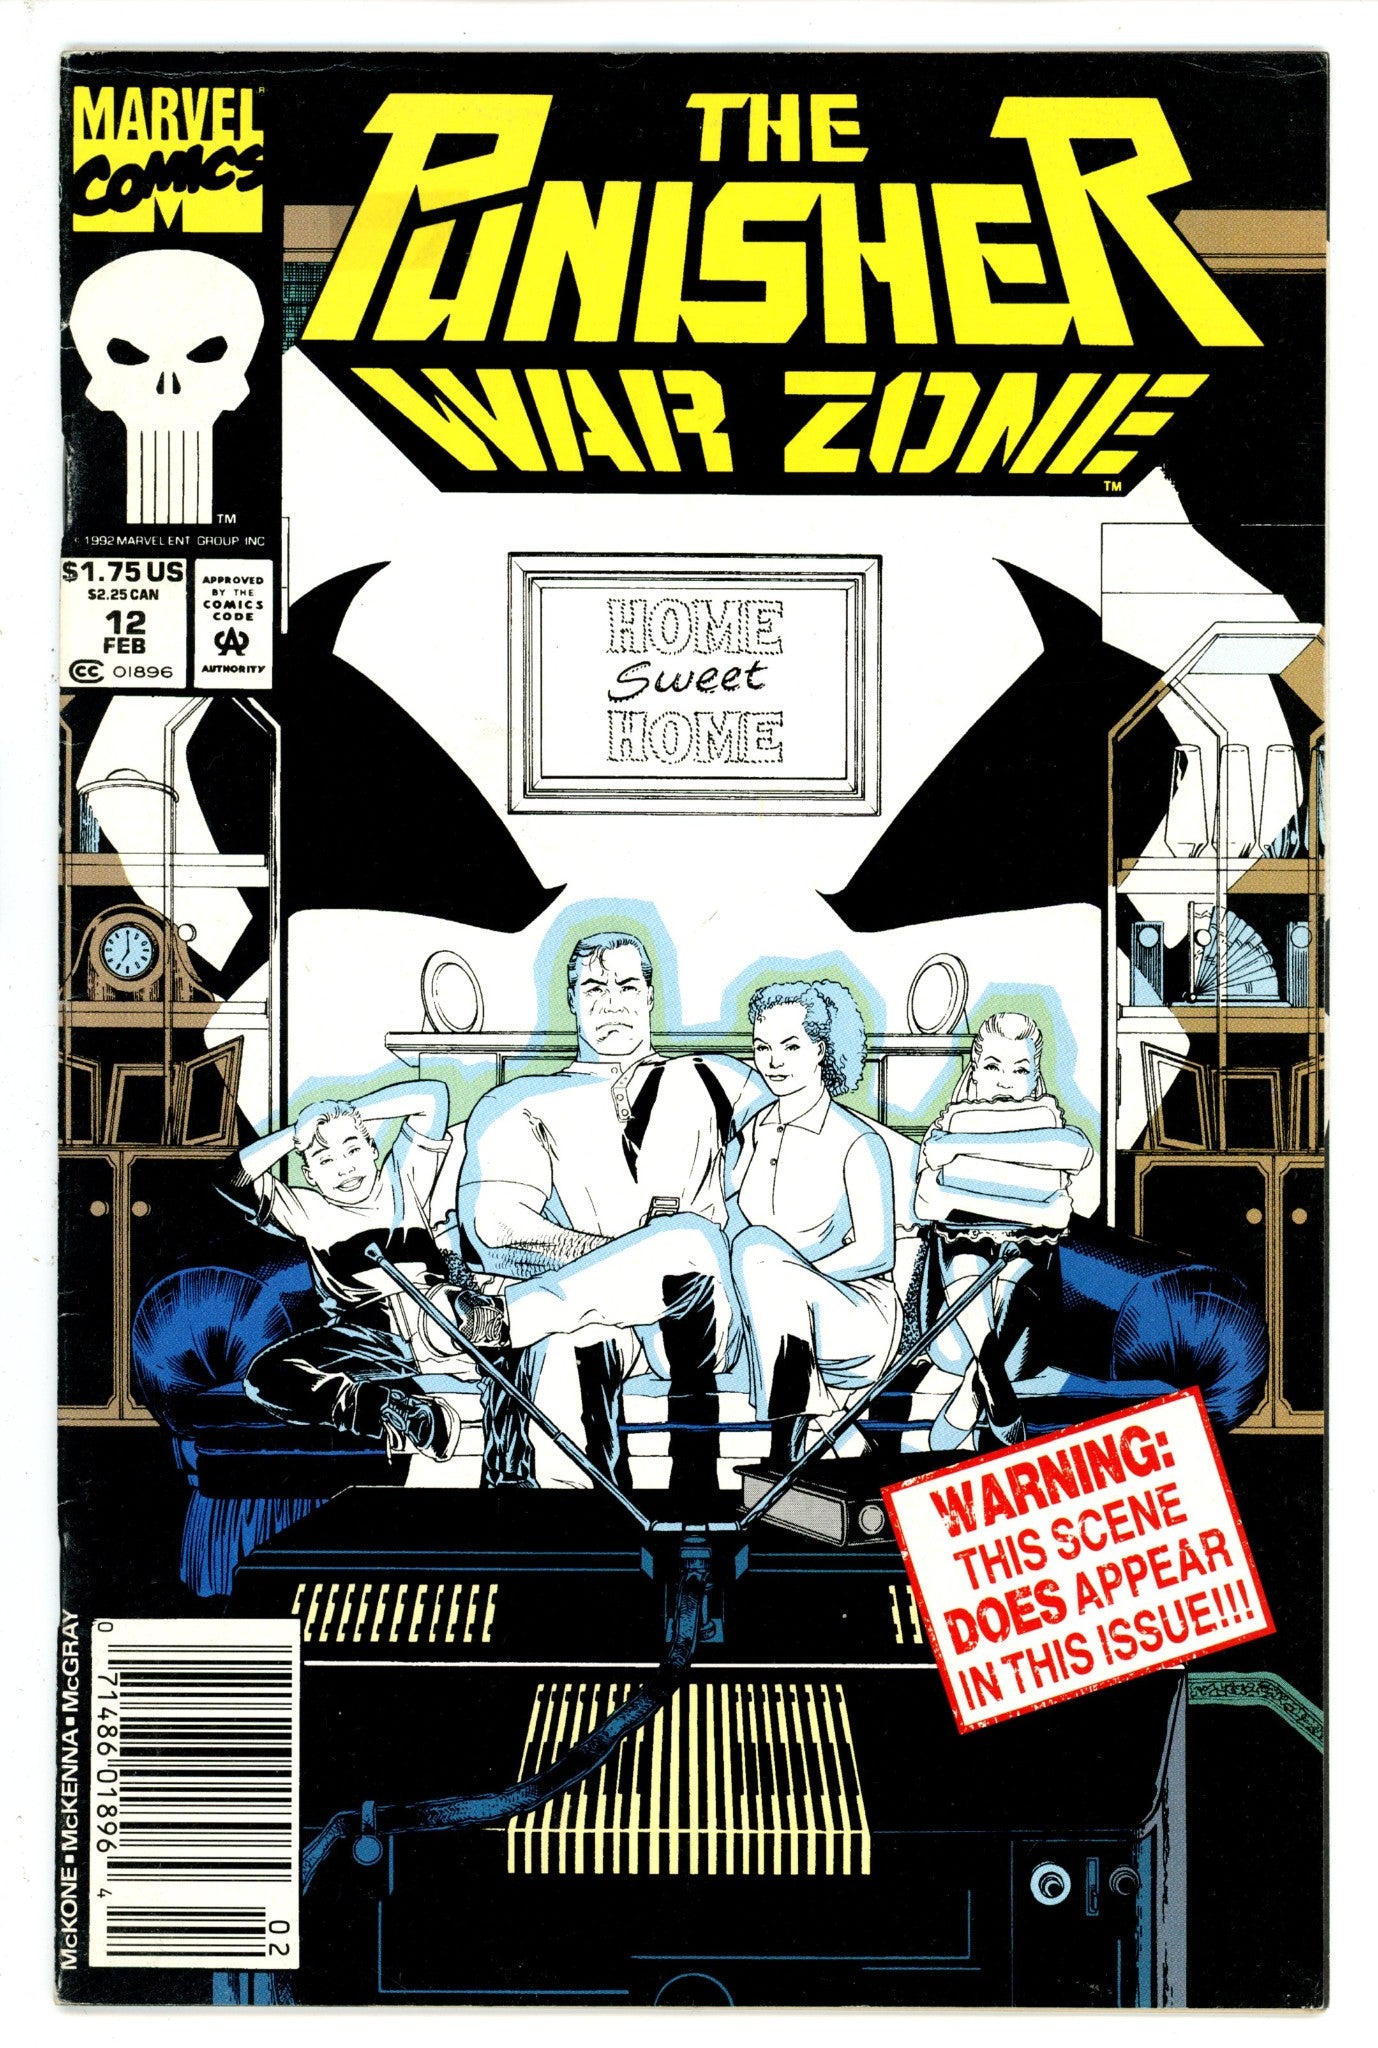 The Punisher: War Zone Vol 1 12 Newsstand